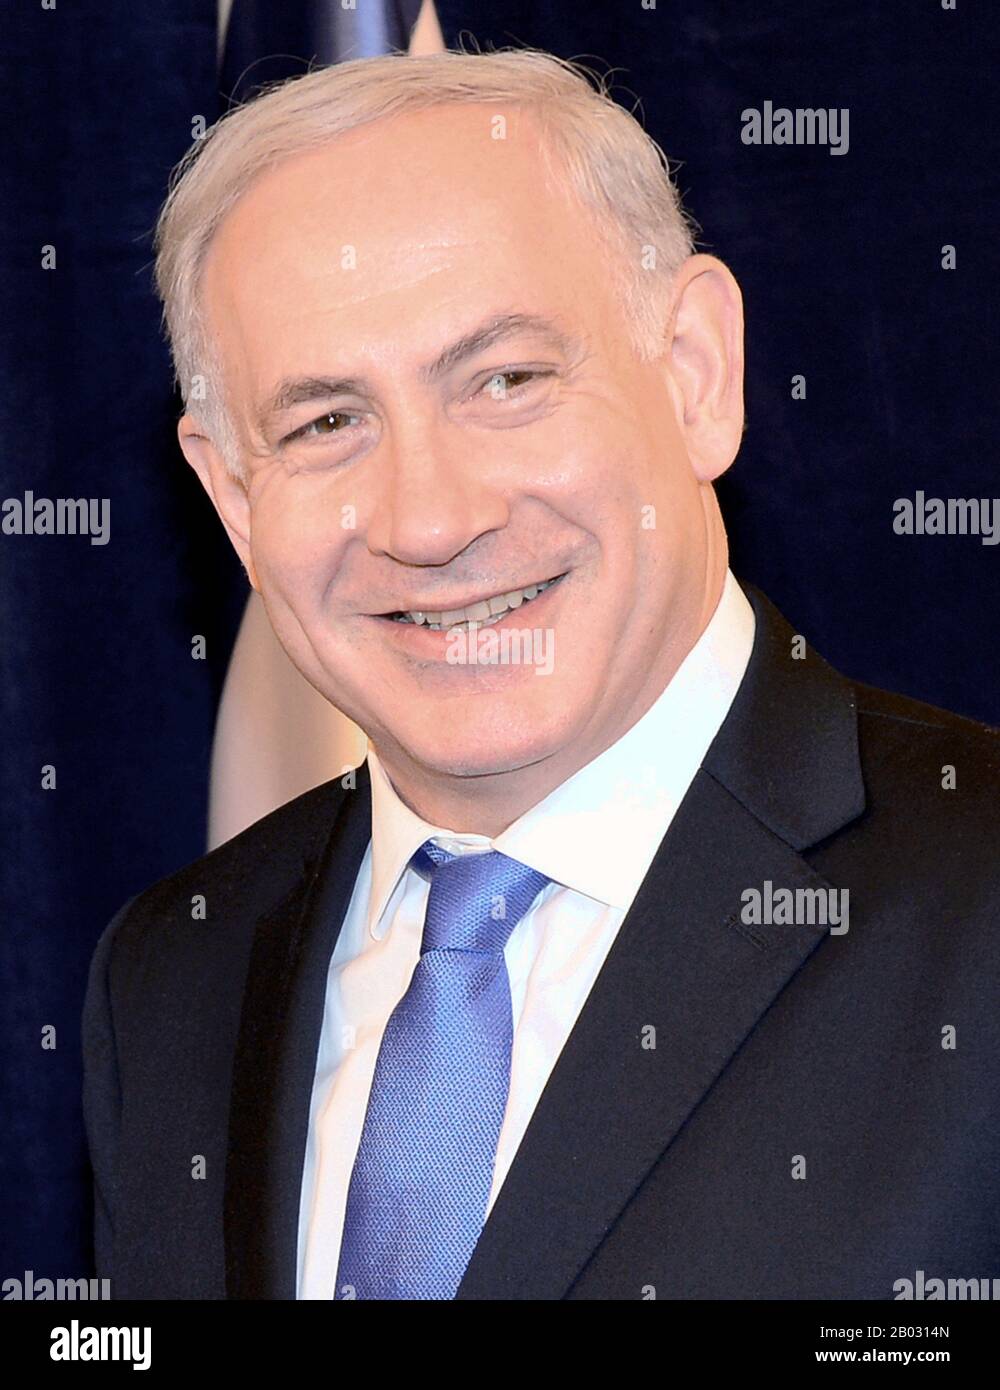 Benjamin 'Bibi' Netanyahu ( né le 21 octobre 1949) est l'actuel Premier ministre d'Israël. Il est également membre de la Knesset et président du parti Likoud. Netanyahu a été élu quatre fois premier ministre d'Israël, correspondant au record de David Ben-Gurion. Il est actuellement le deuxième Premier ministre le plus longtemps au service de l'histoire d'Israël après David Ben-Gurion, et à la fin de son mandat actuel, il deviendra le Premier ministre le plus longtemps au service de l'histoire d'Israël. Banque D'Images